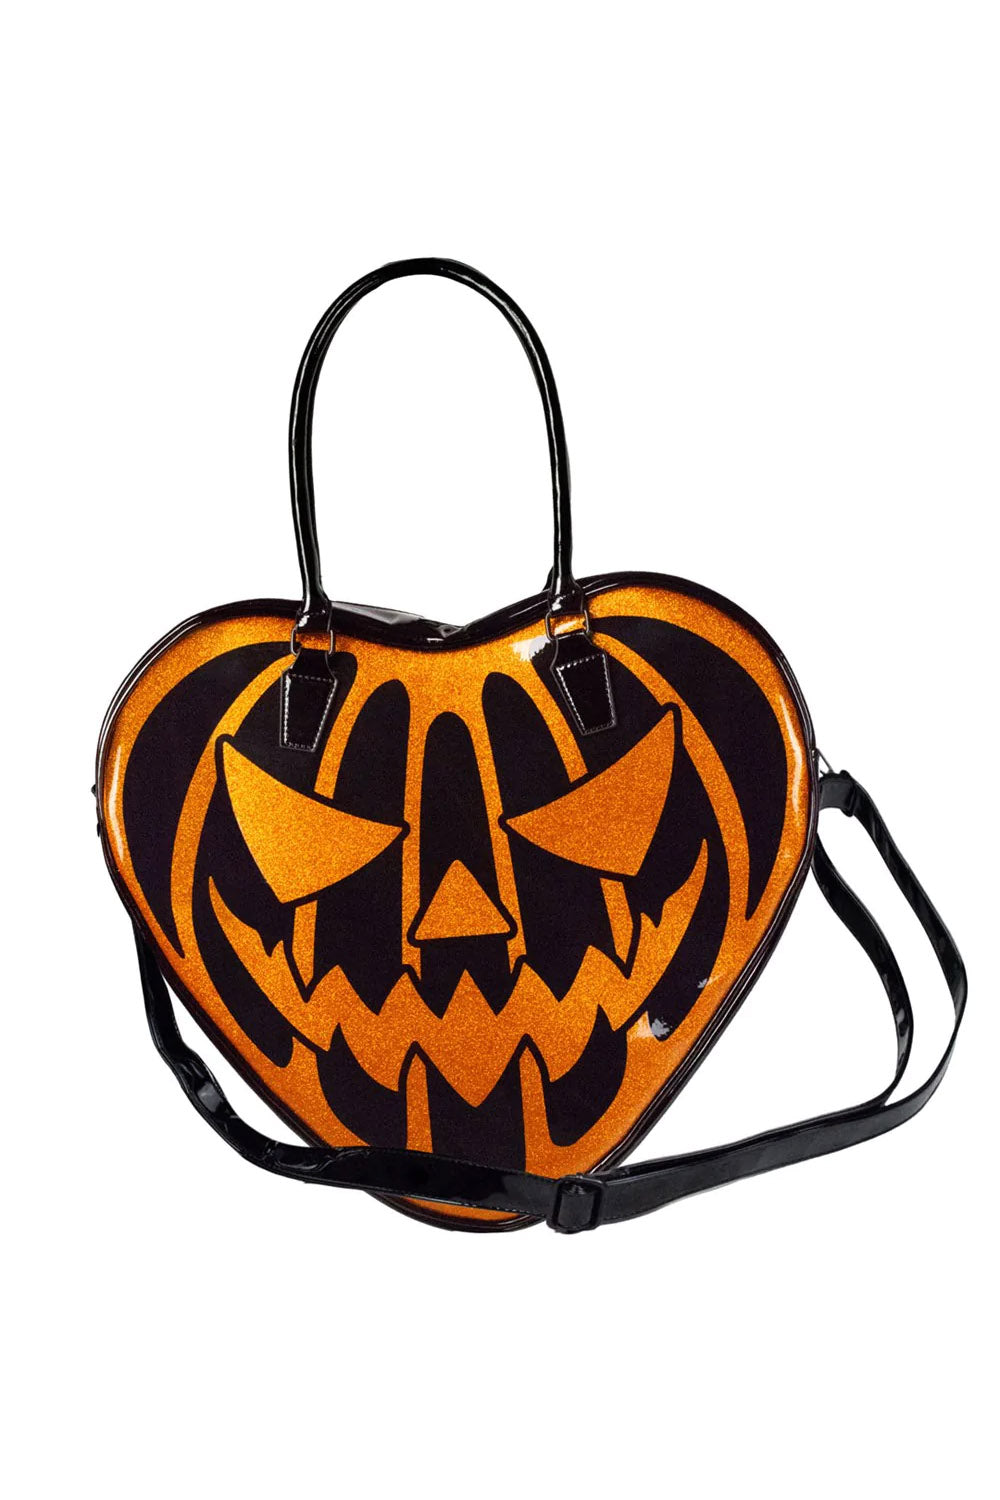 Little Pumpkin Halloween Bag - Etsy